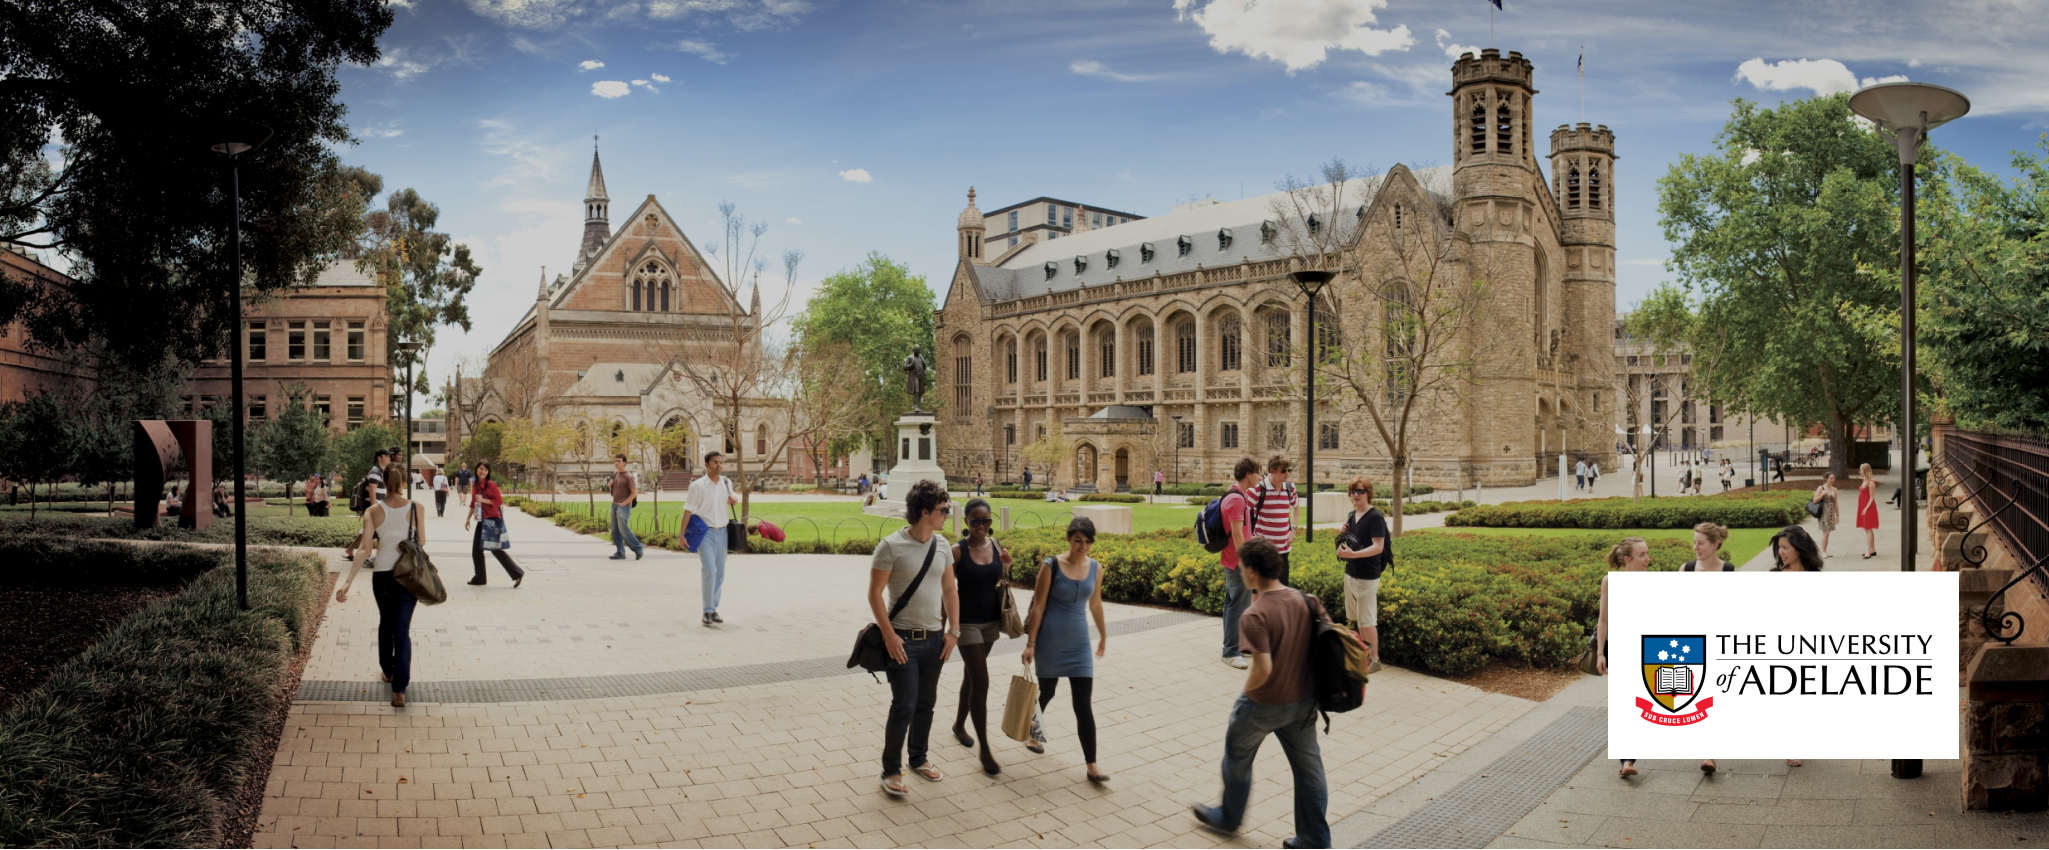 阿得雷德大學 The University of Adelaide